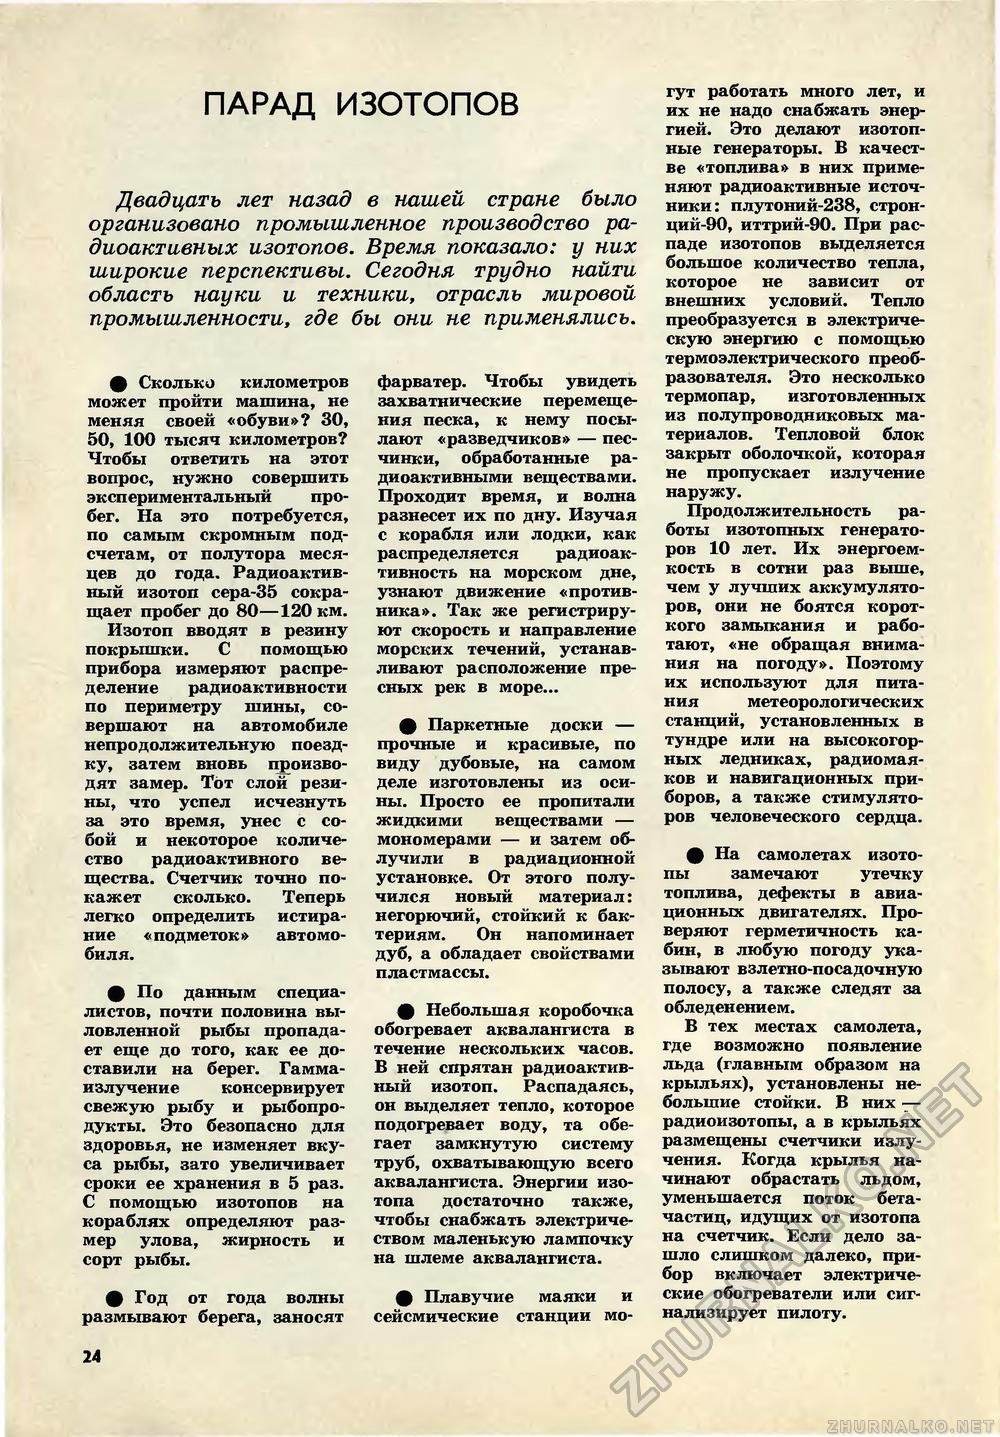   1969-05,  26